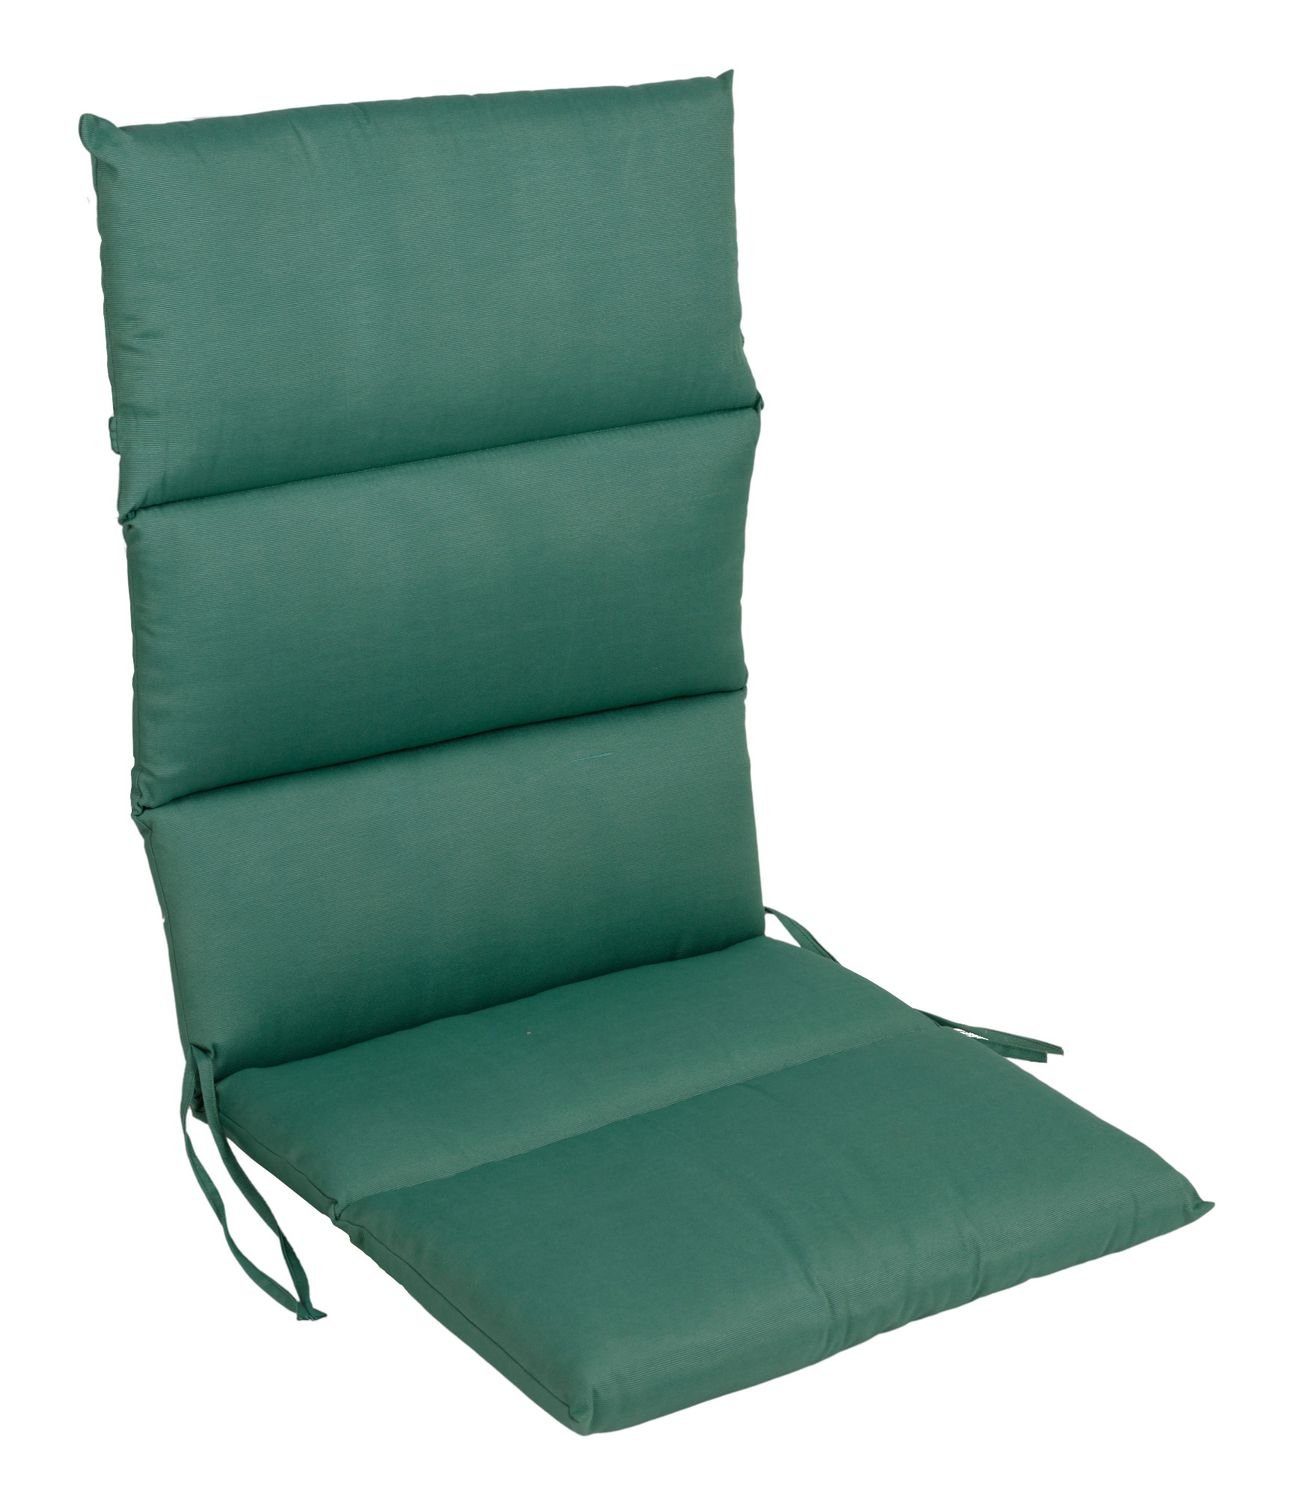 BURI Bankauflage Rollstepp Hochlehner Auflage 123x50cm Polsterauflage Sesselauflage Sit